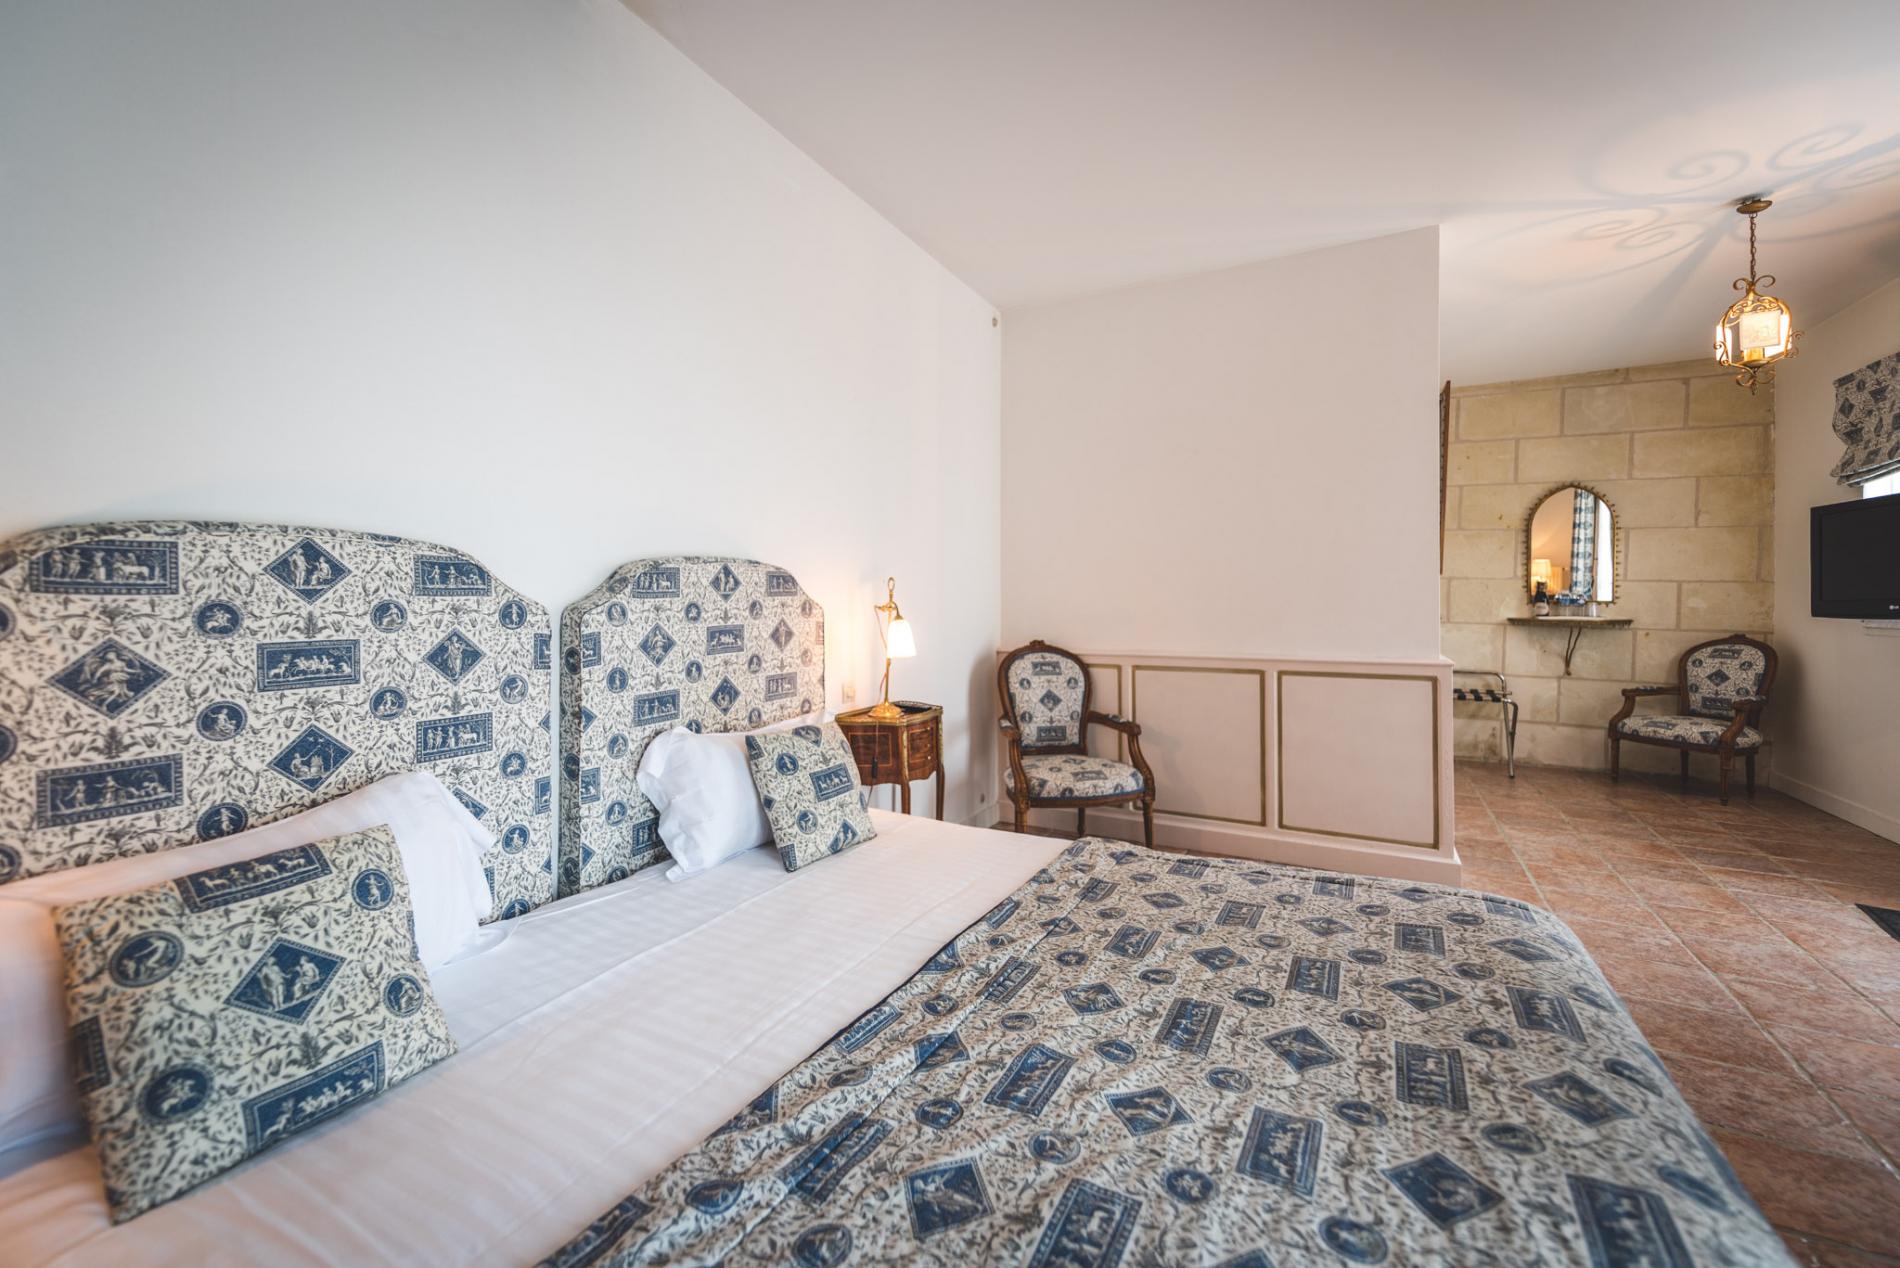 Check Out The Offers Of The Hotel De La Demeure De Vignole